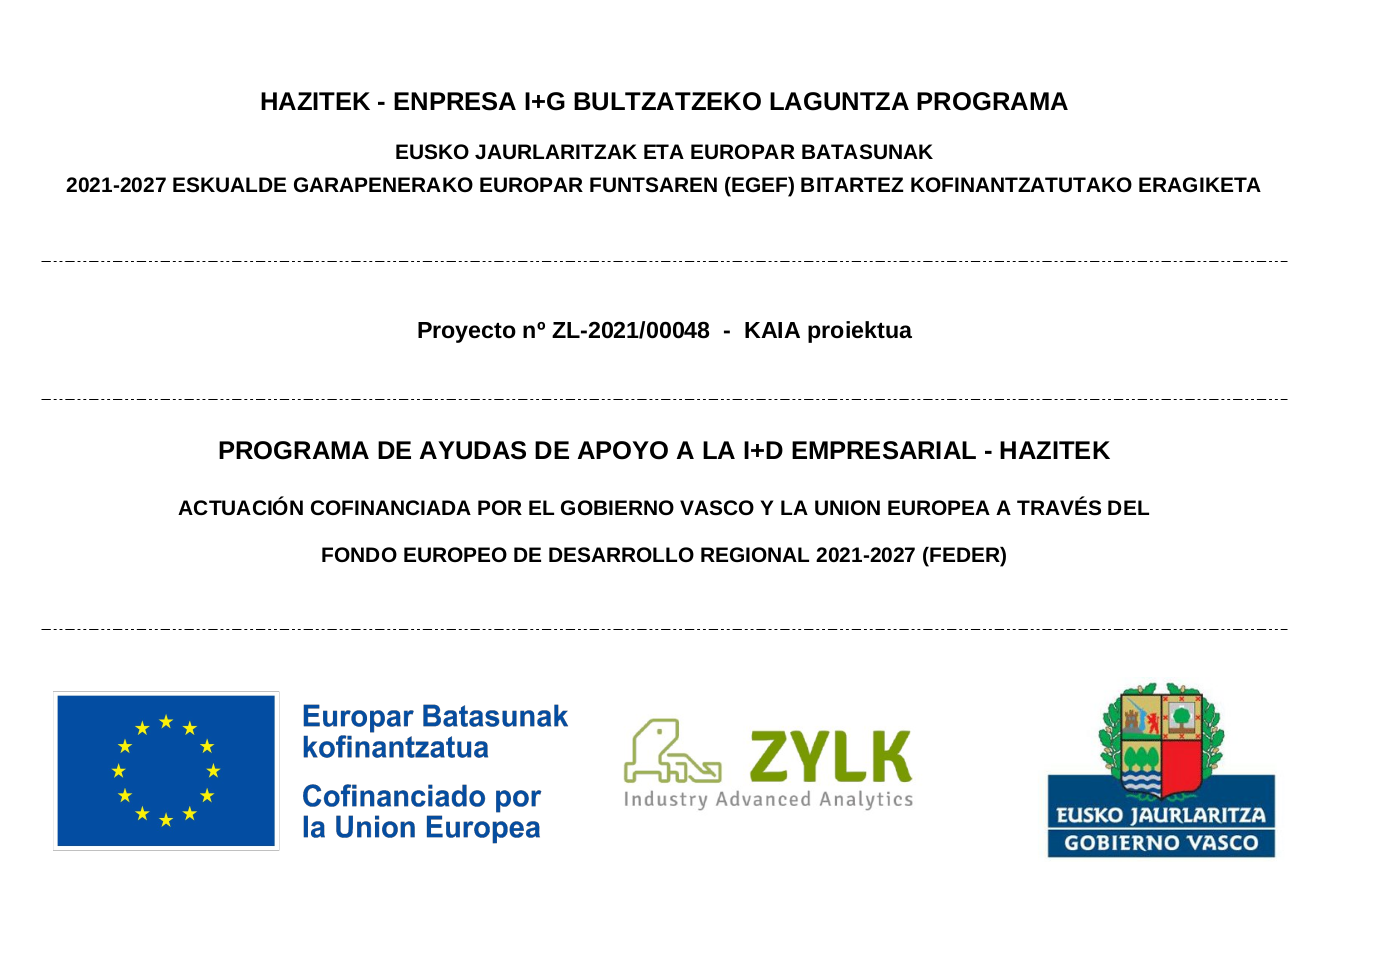 Programa financiado por la UE y el Gobierno vasco